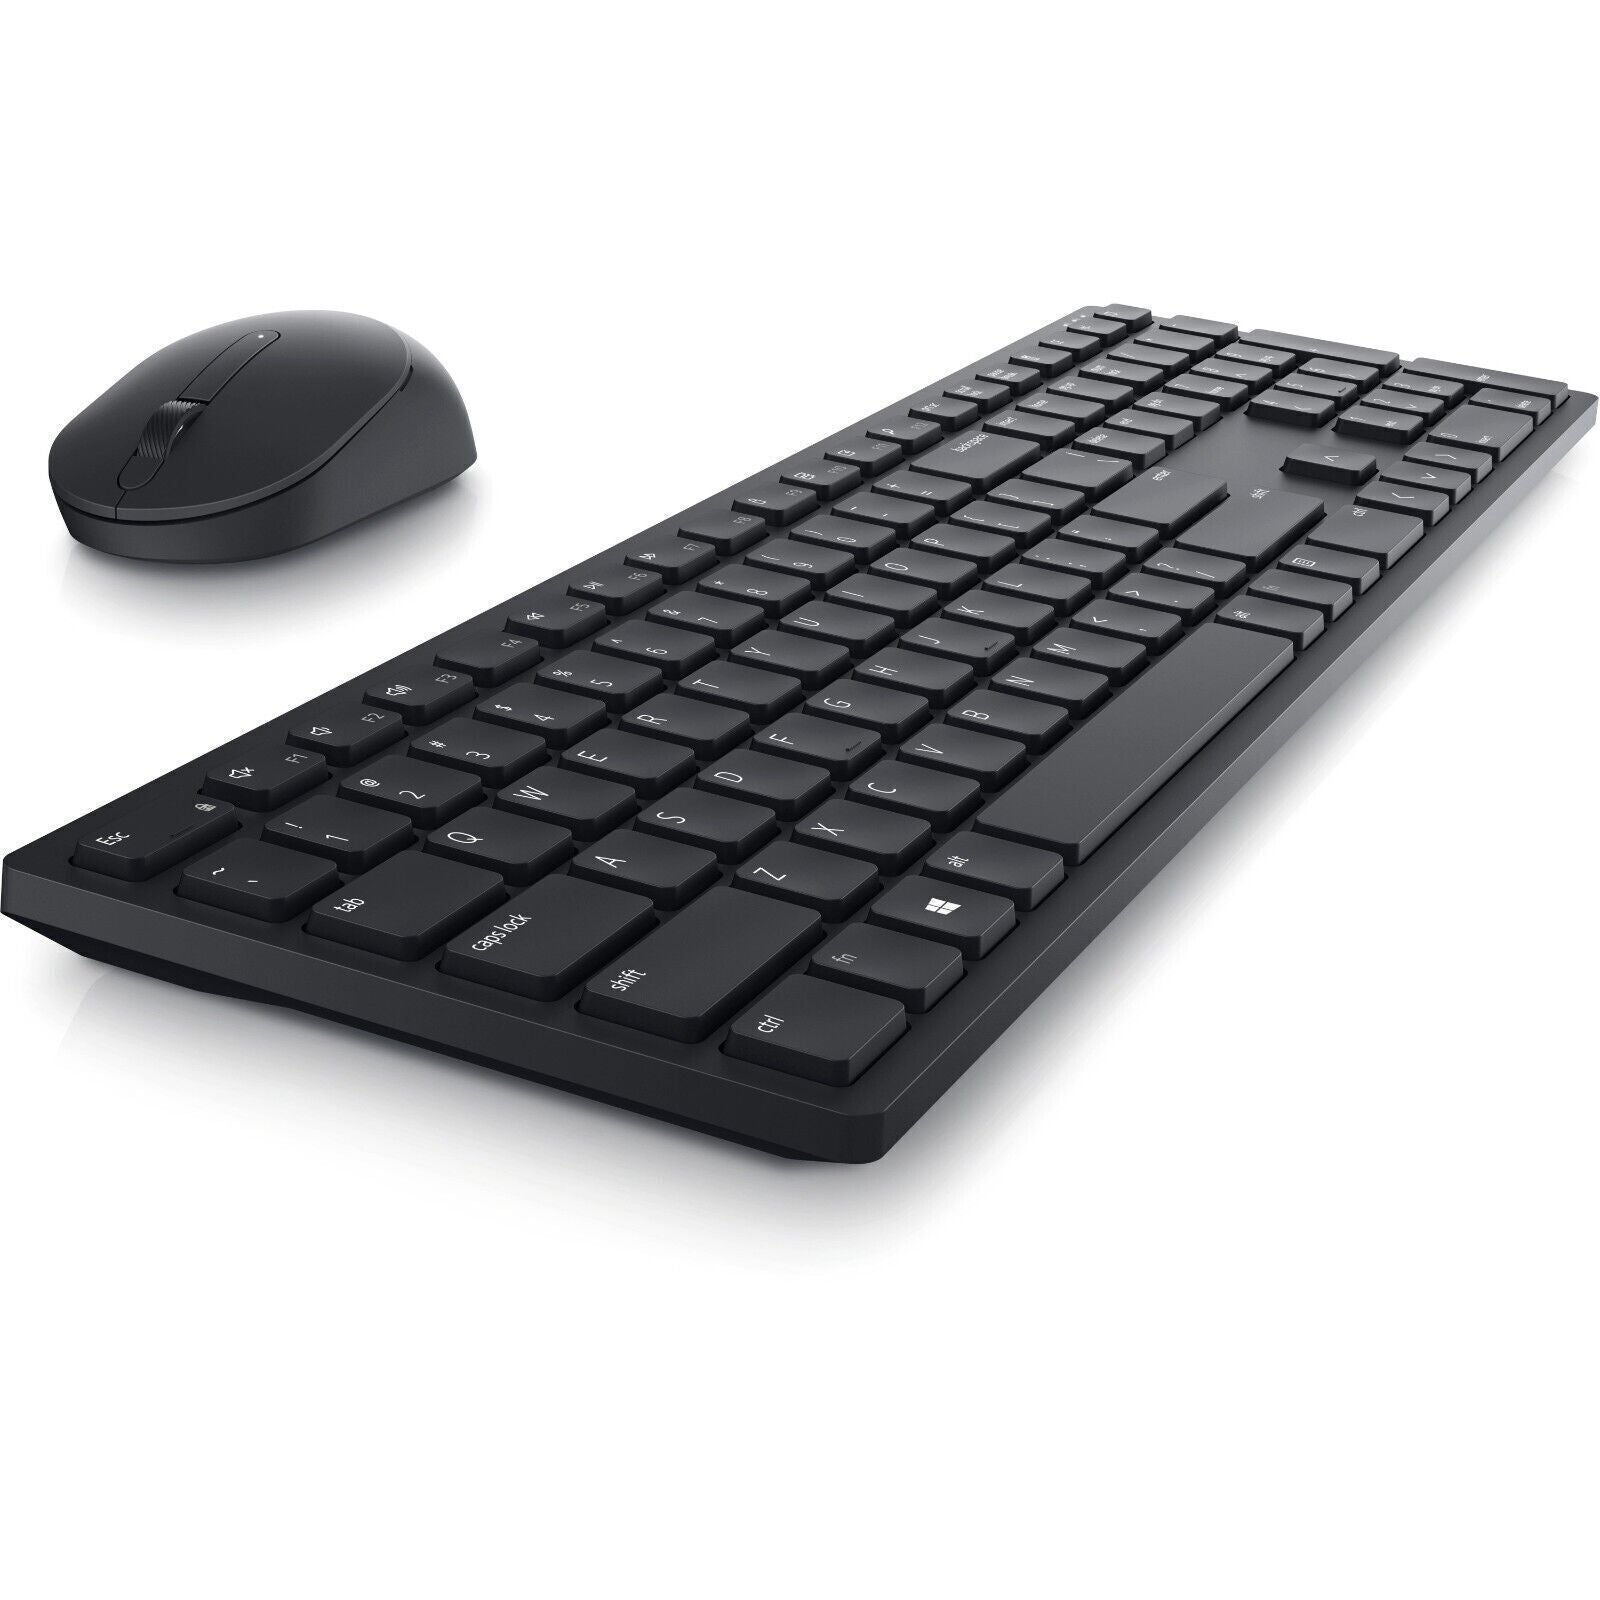 Dell KM5221WBKB-US Pro KM5221W Keyboard & Mouse - Wireless